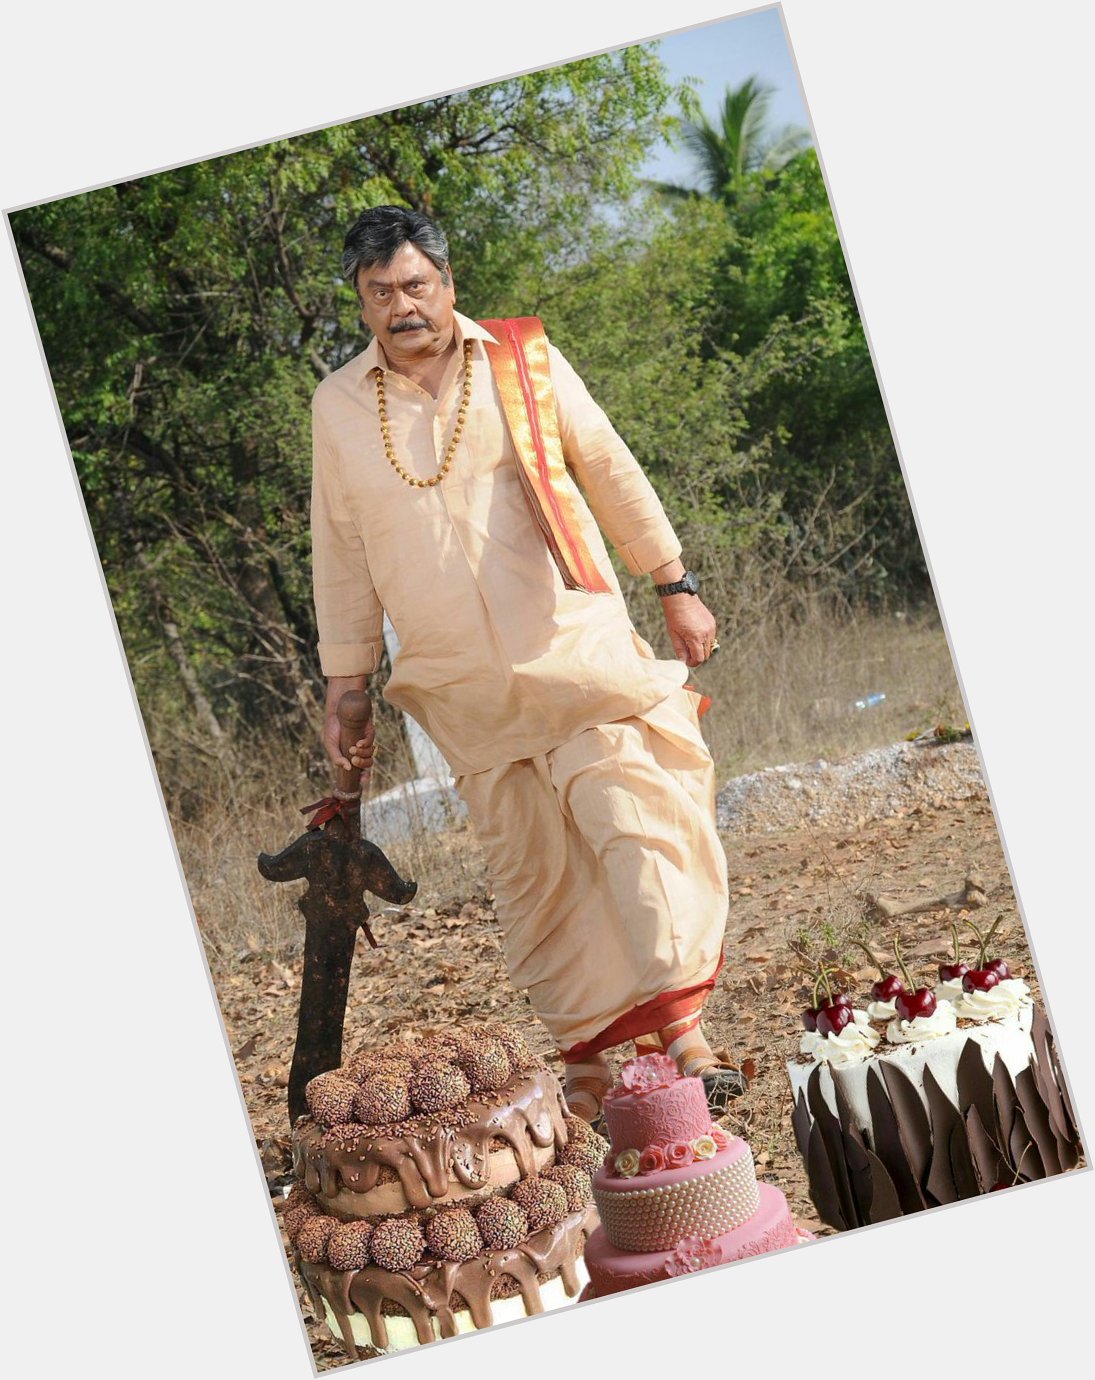 Happy Birthday To Krishnam Raju
Garu 